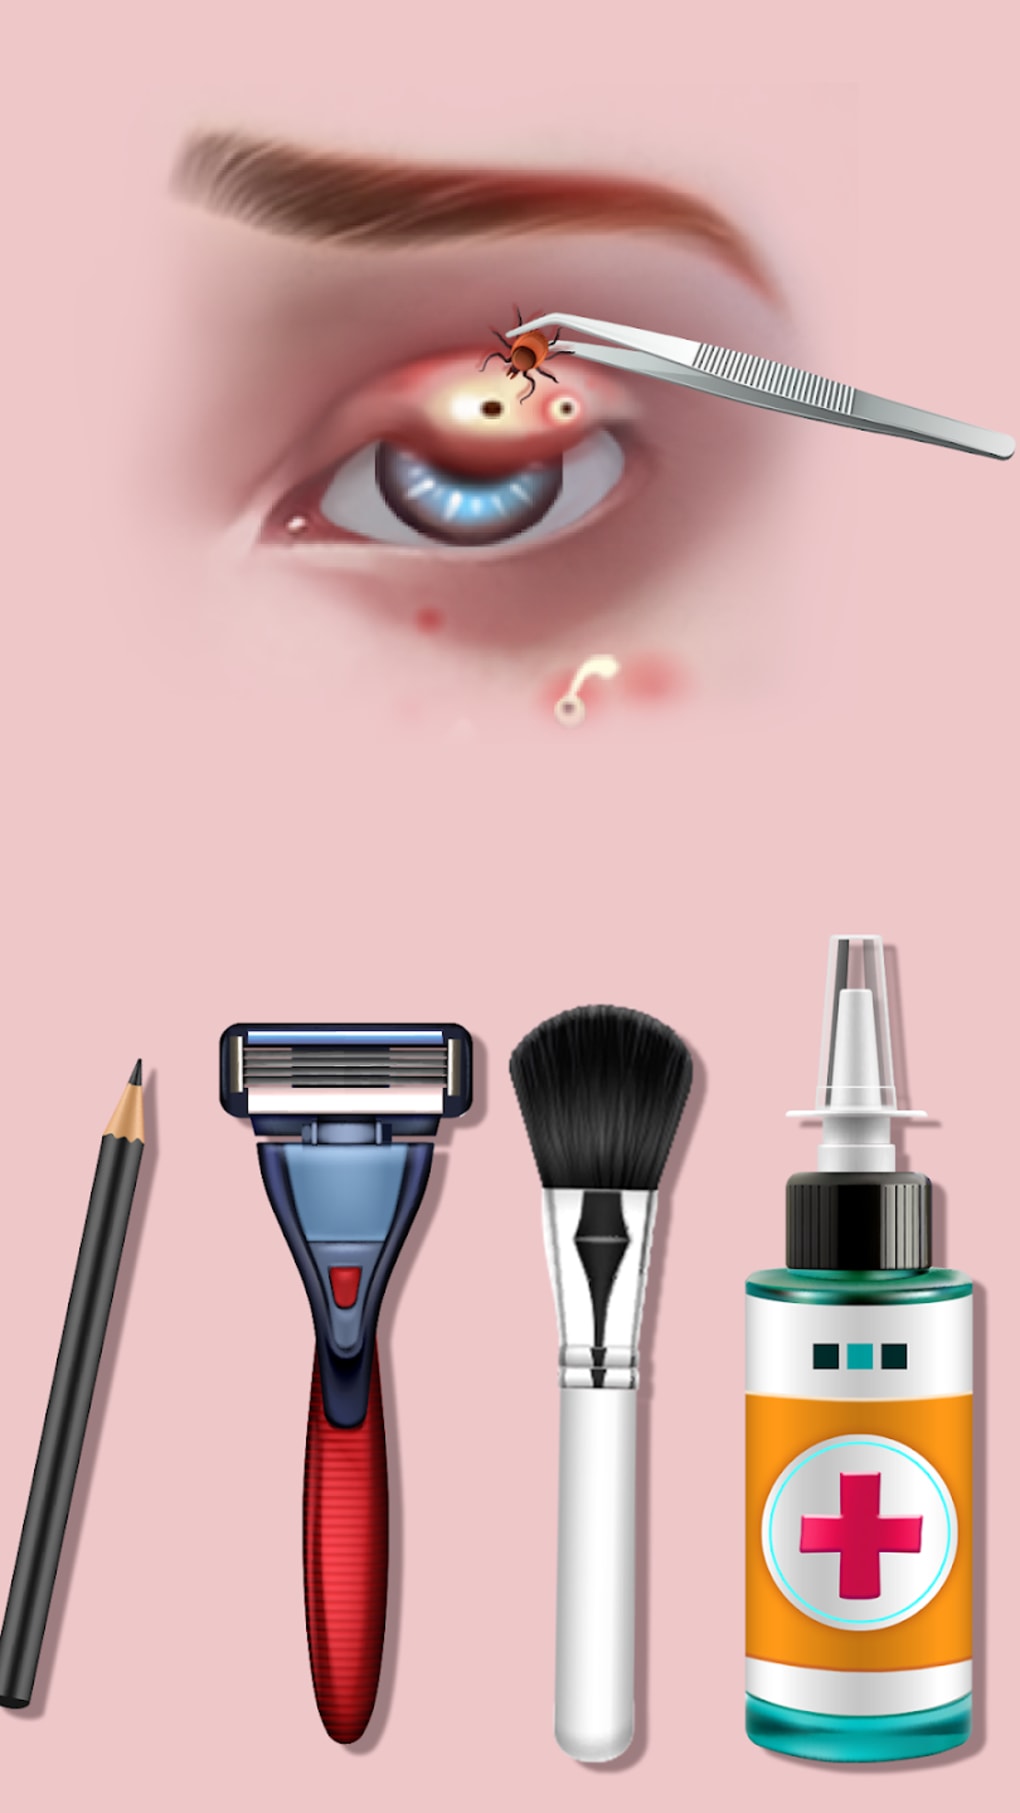 Faça download do Jogo de Maquiagem- ASMR Makeup APK v1.0.8 para Android